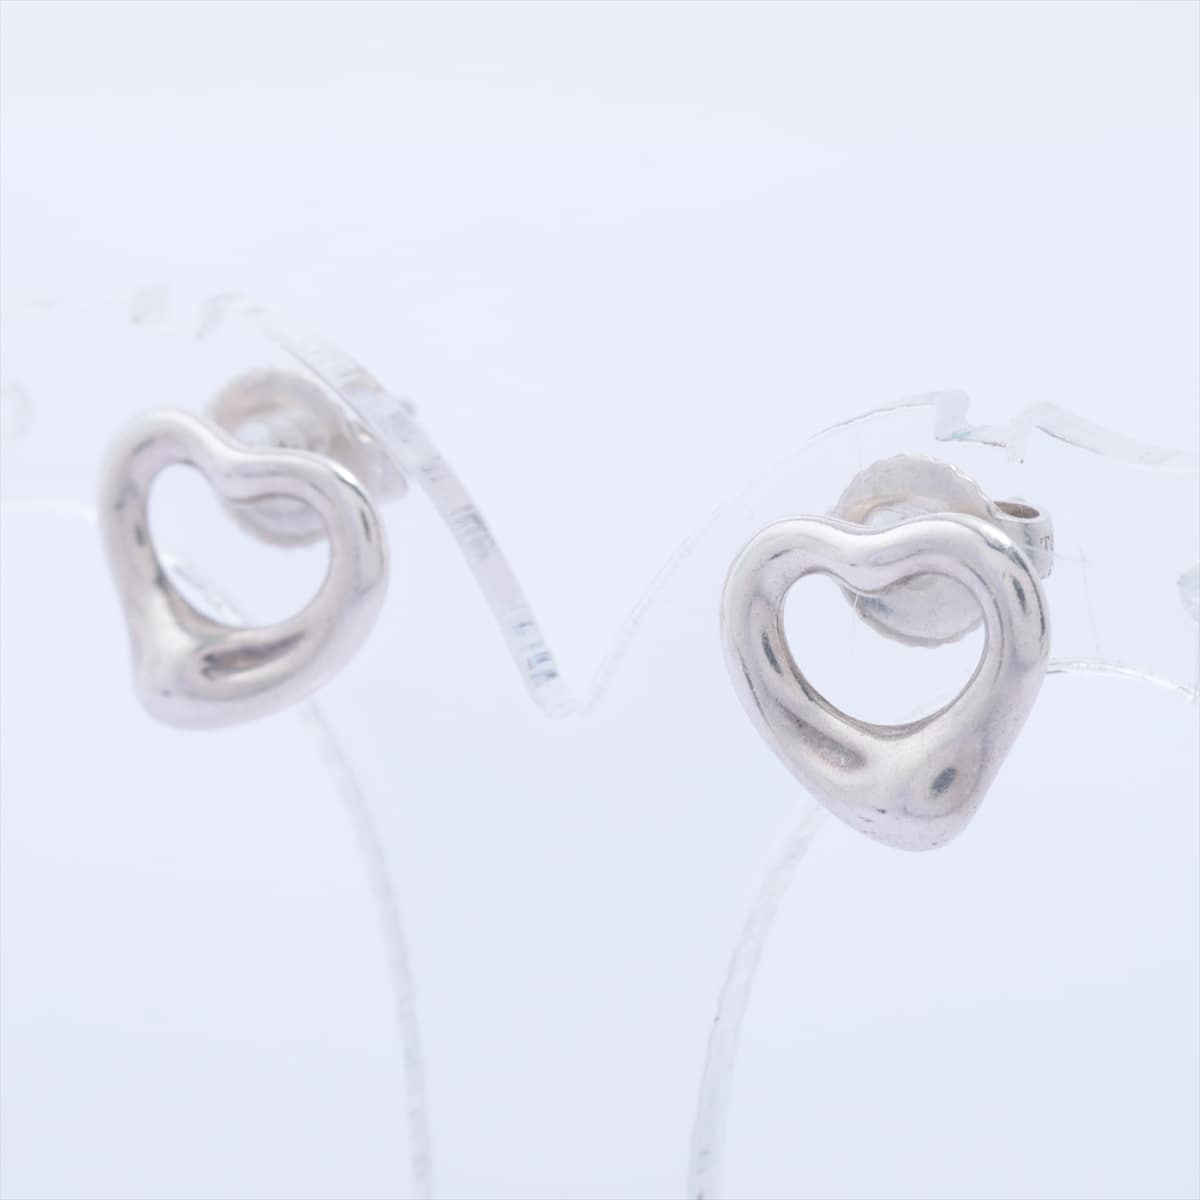 Tiffany Open Heart Piercing jewelry (for both ears) 925 Silver